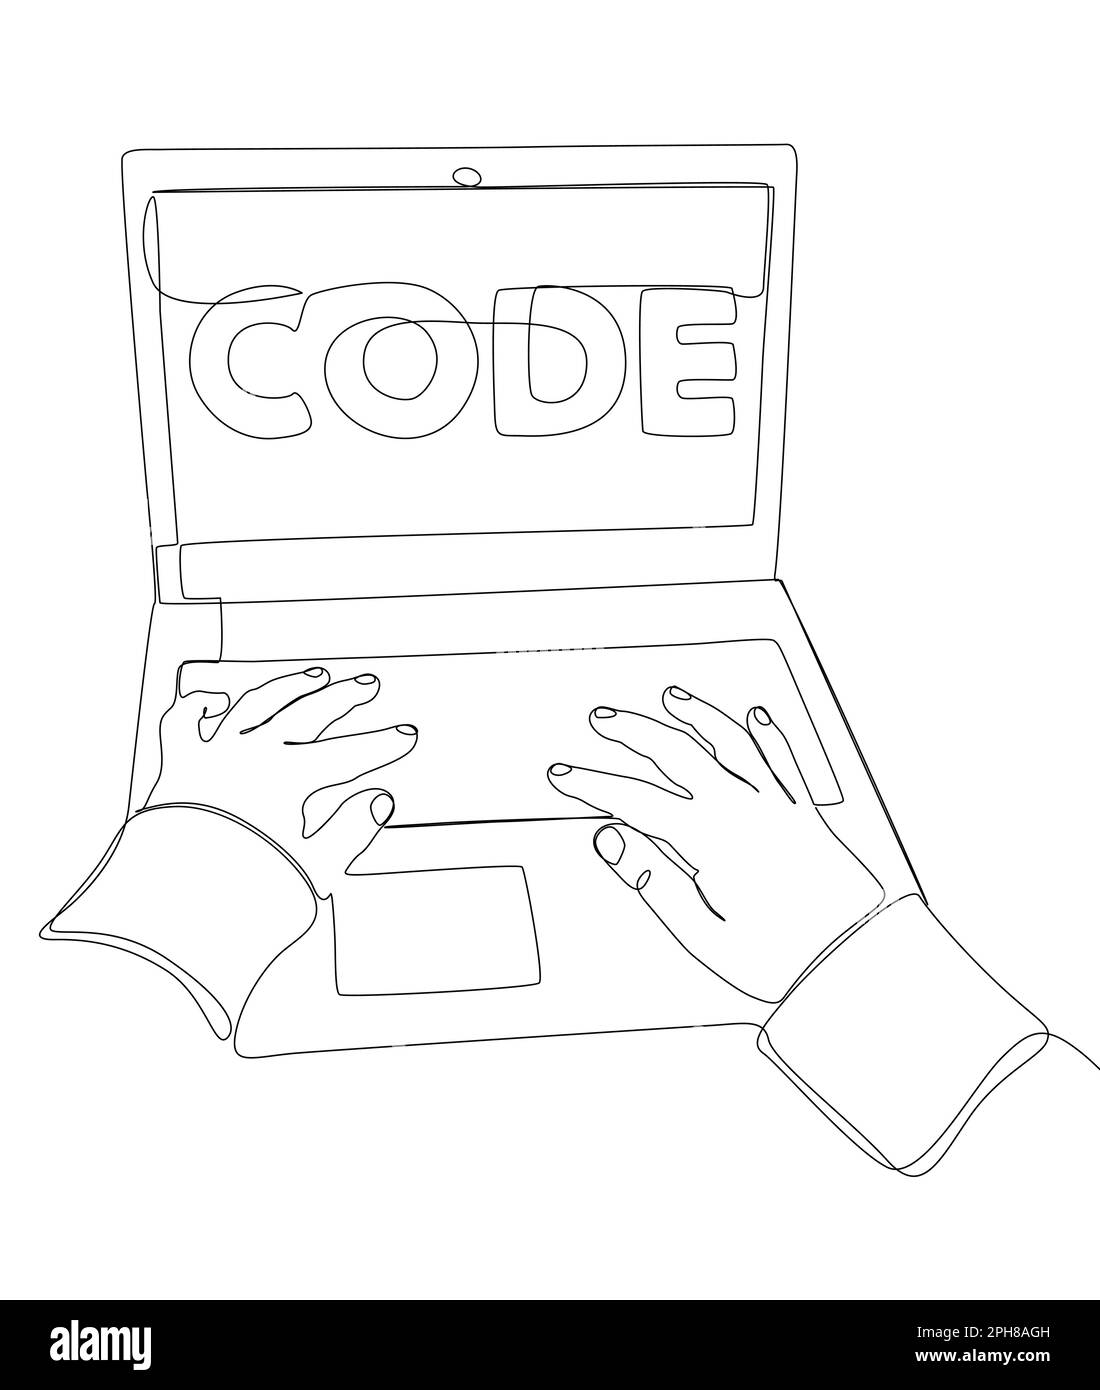 Une ligne d'homme continue avec ordinateur portable et texte de code. Concept de vecteur d'illustration à trait fin. Dessin de contour idées créatives. Illustration de Vecteur